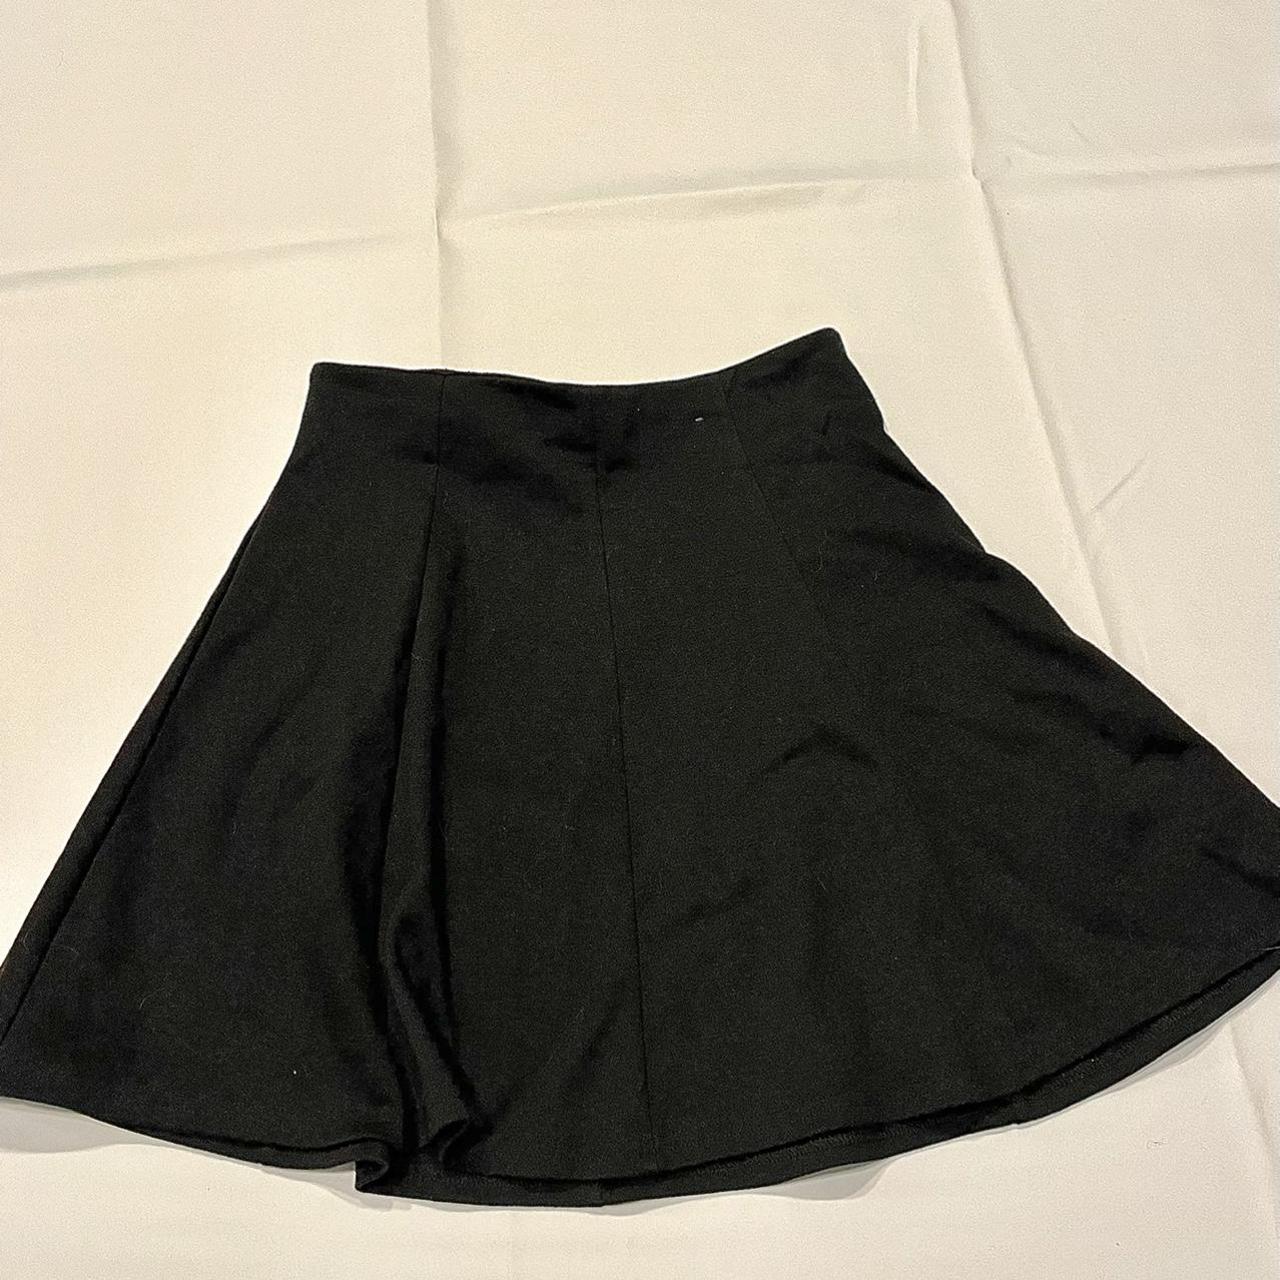 Primark Women's Black Skirt | Depop